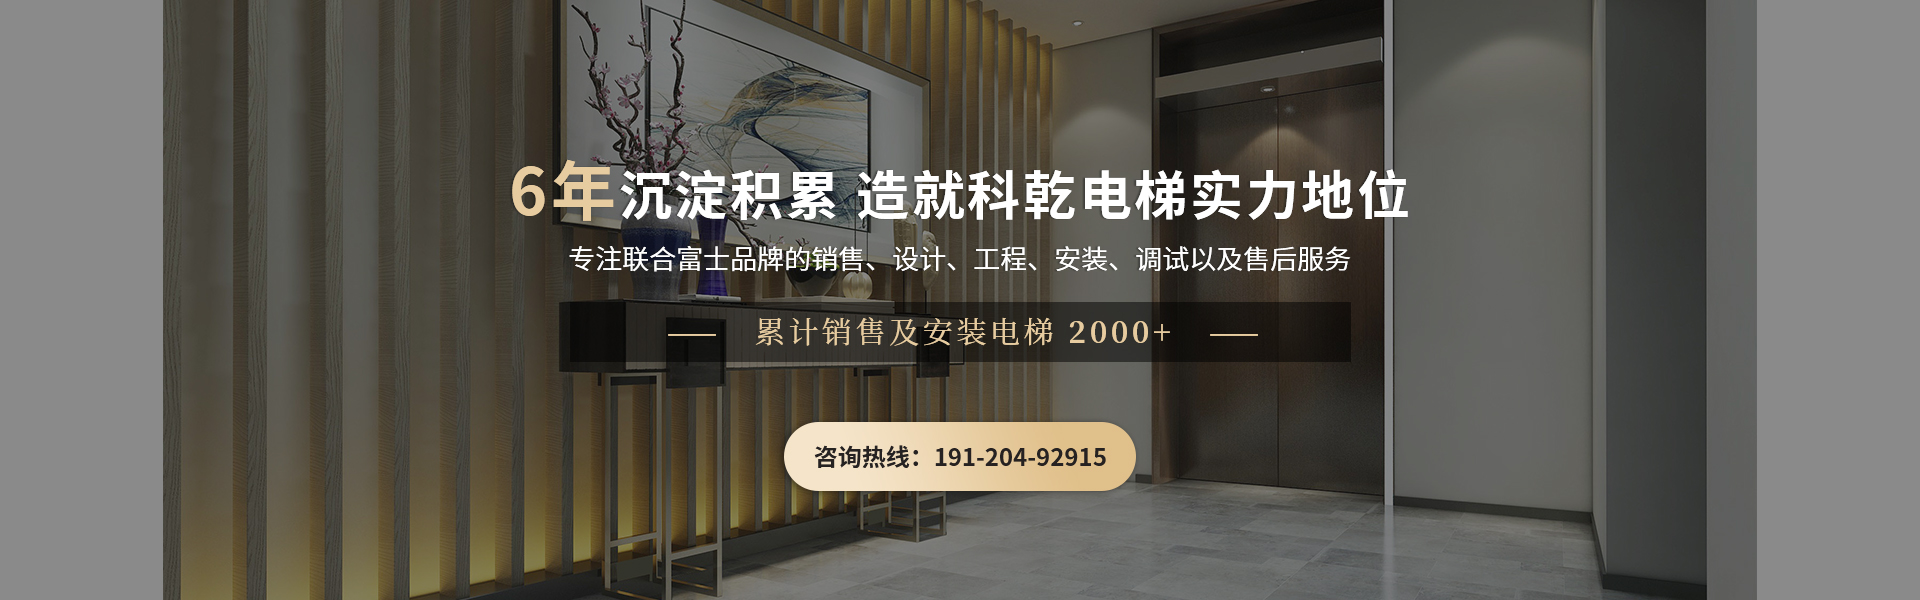 广州科乾电梯6年家装电梯案例超2000+